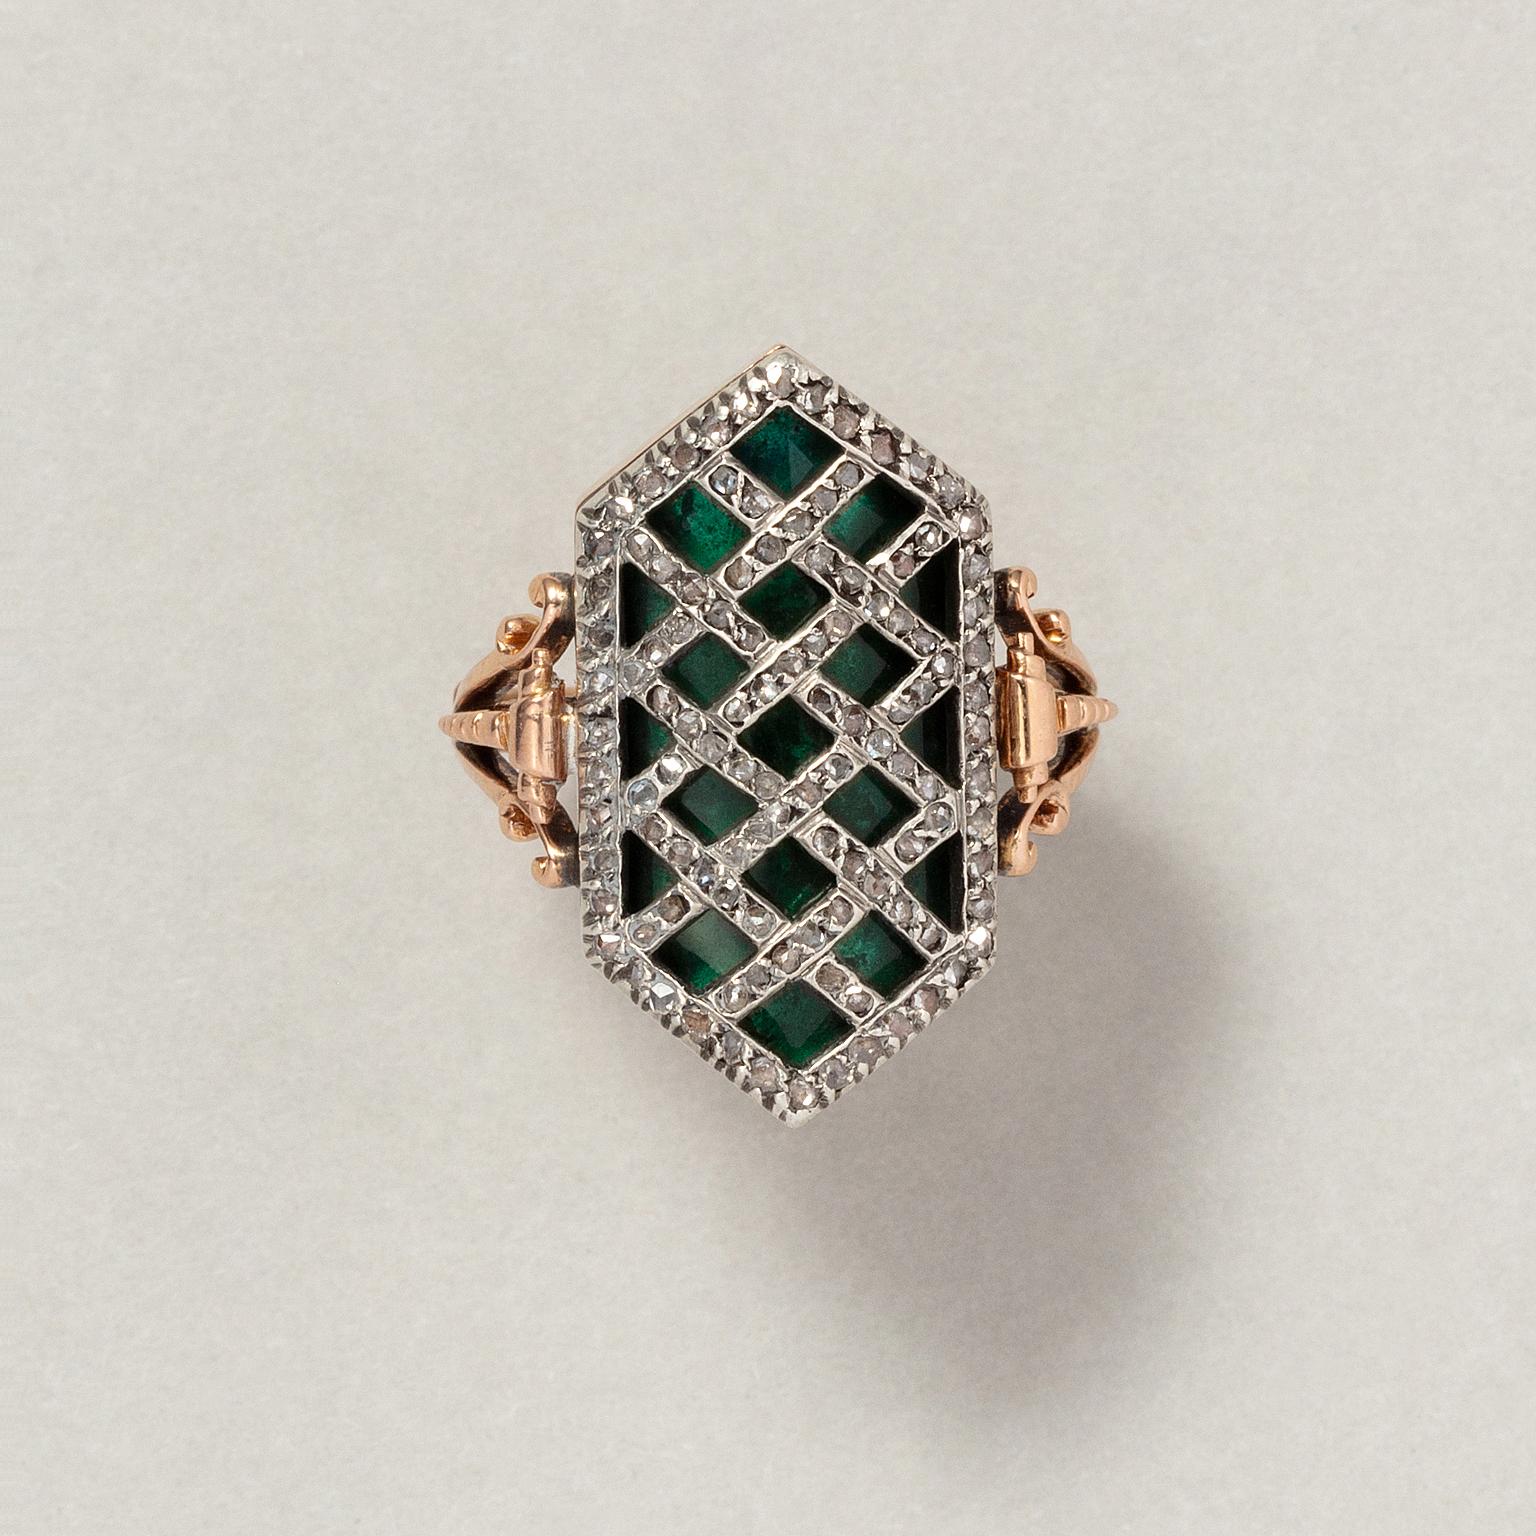 Ein Ring aus 18 Karat Roségold mit einem sechseckigen, konkaven Element mit dunkelgrünem, durchscheinendem Glas, darüber ein diagonales Gitter aus Silber, besetzt mit Diamanten im Rosenschliff, der Schaft ist floral graviert und mit einem